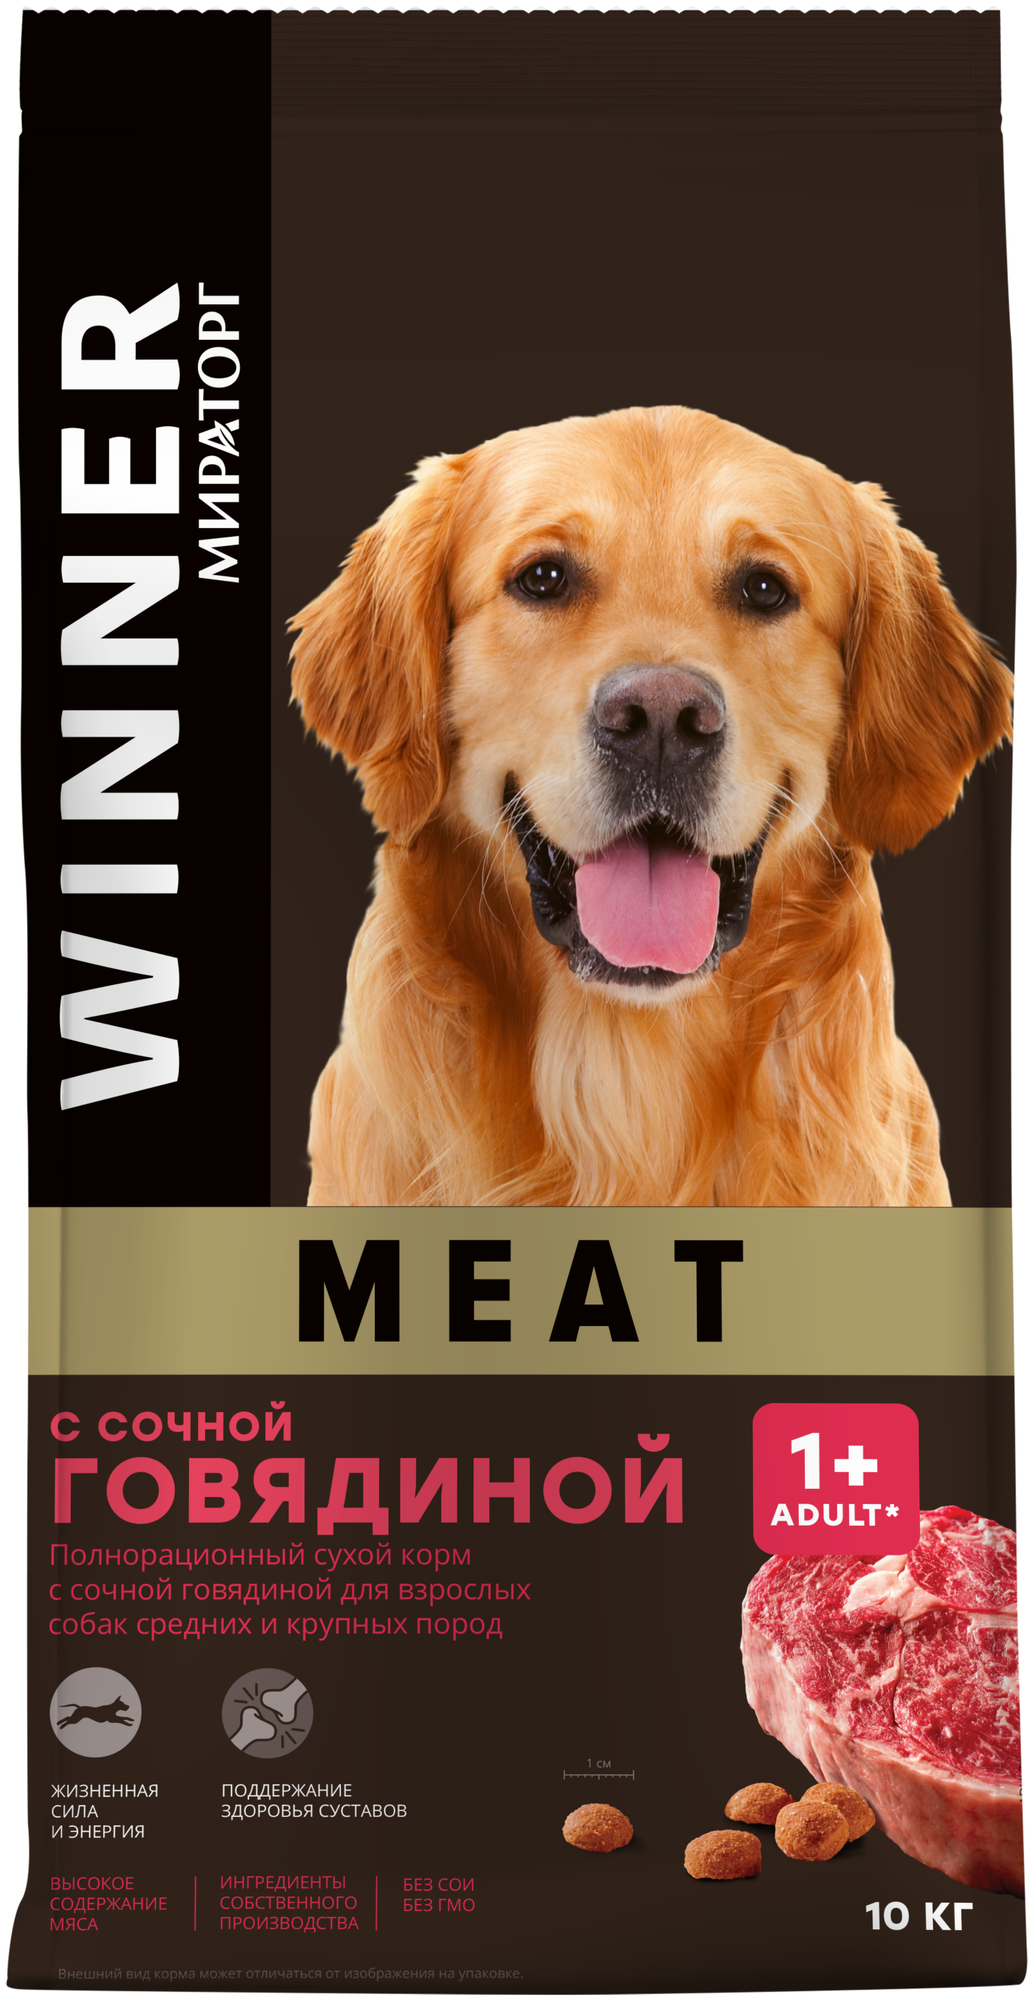 Сухой корм для собак WINNER MEAT полнорационный для взрослых собак средних и крупных пород с сочной говядиной 10кг